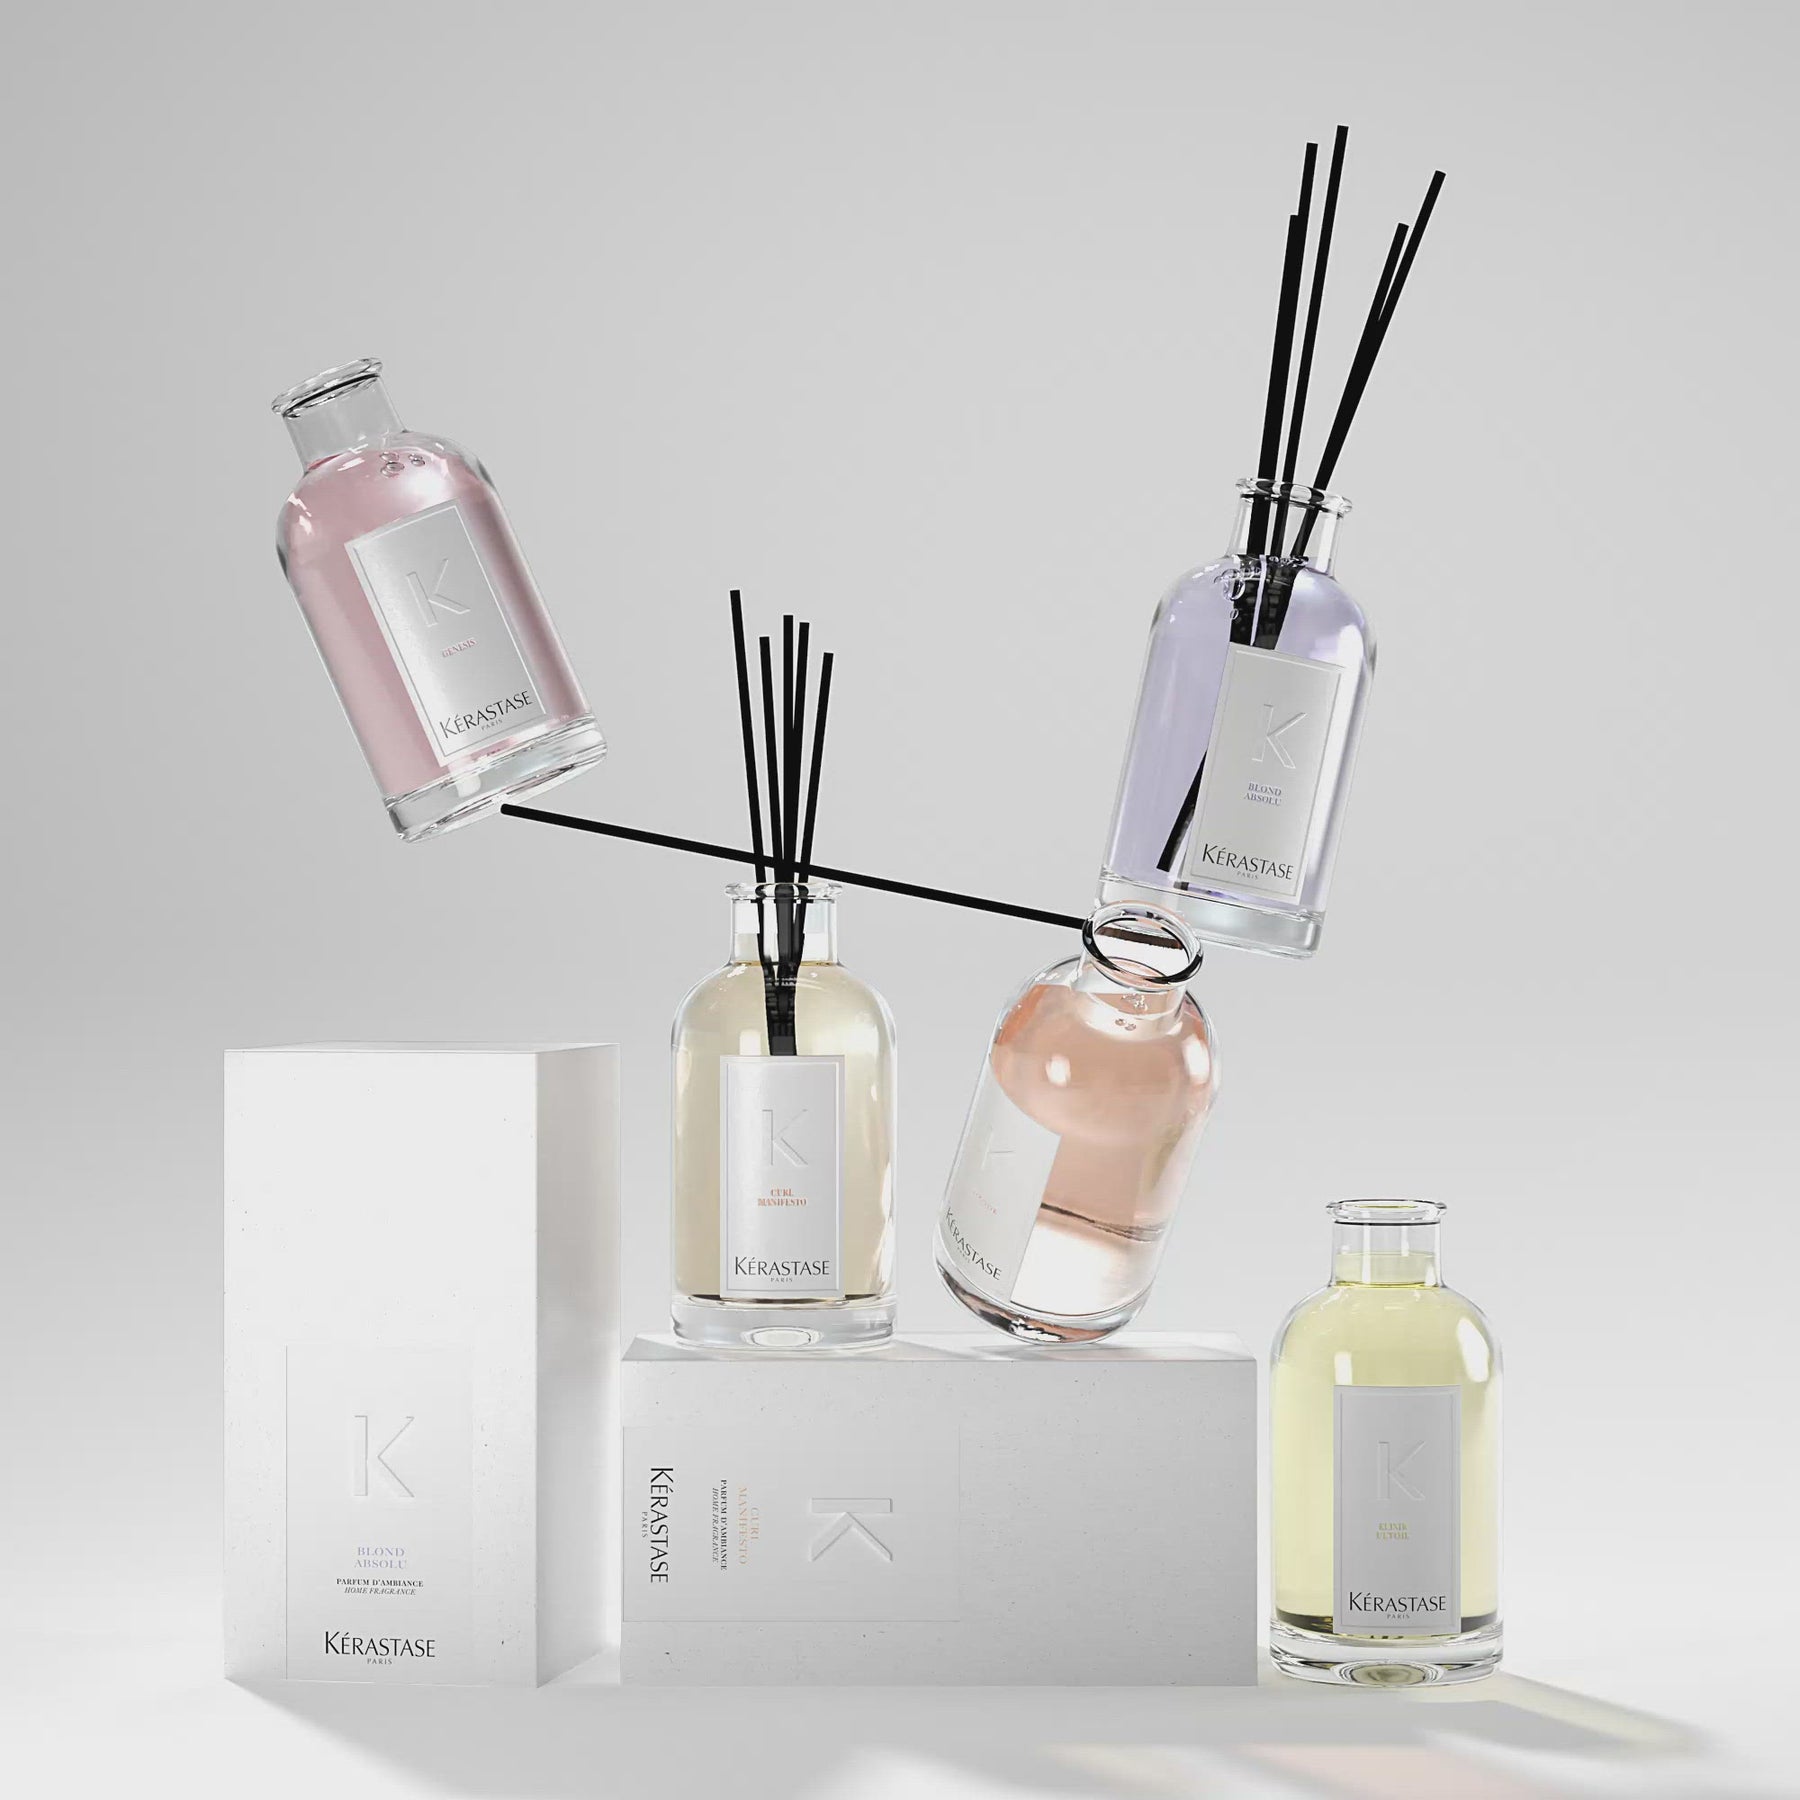 strand laser Potentiel Limited Edition Kérastase Home Fragrance | My Public Beauty